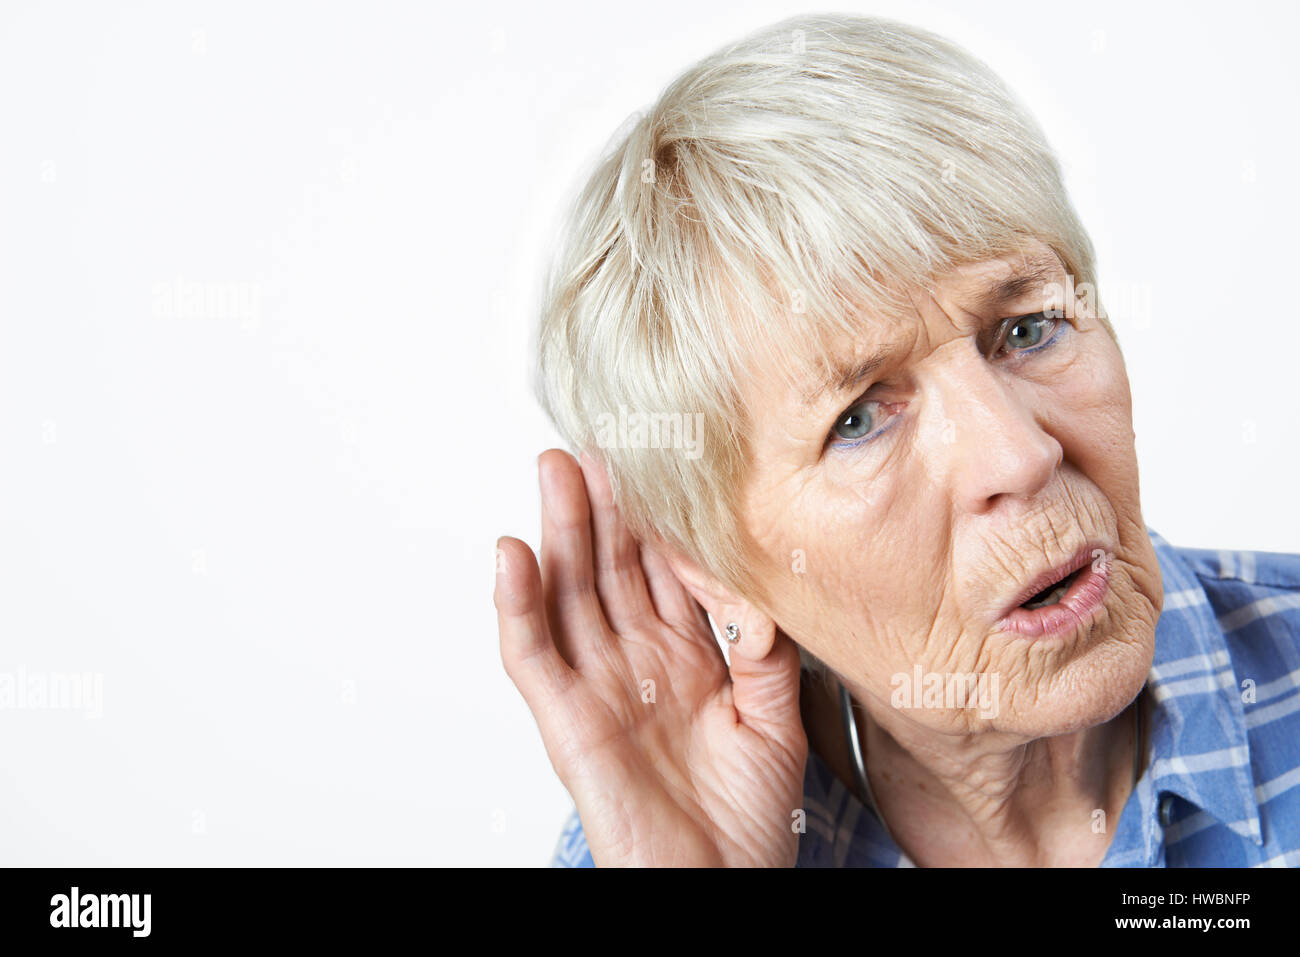 Foto de estudio de la mujer de mayor edad padecen sordera Foto de stock